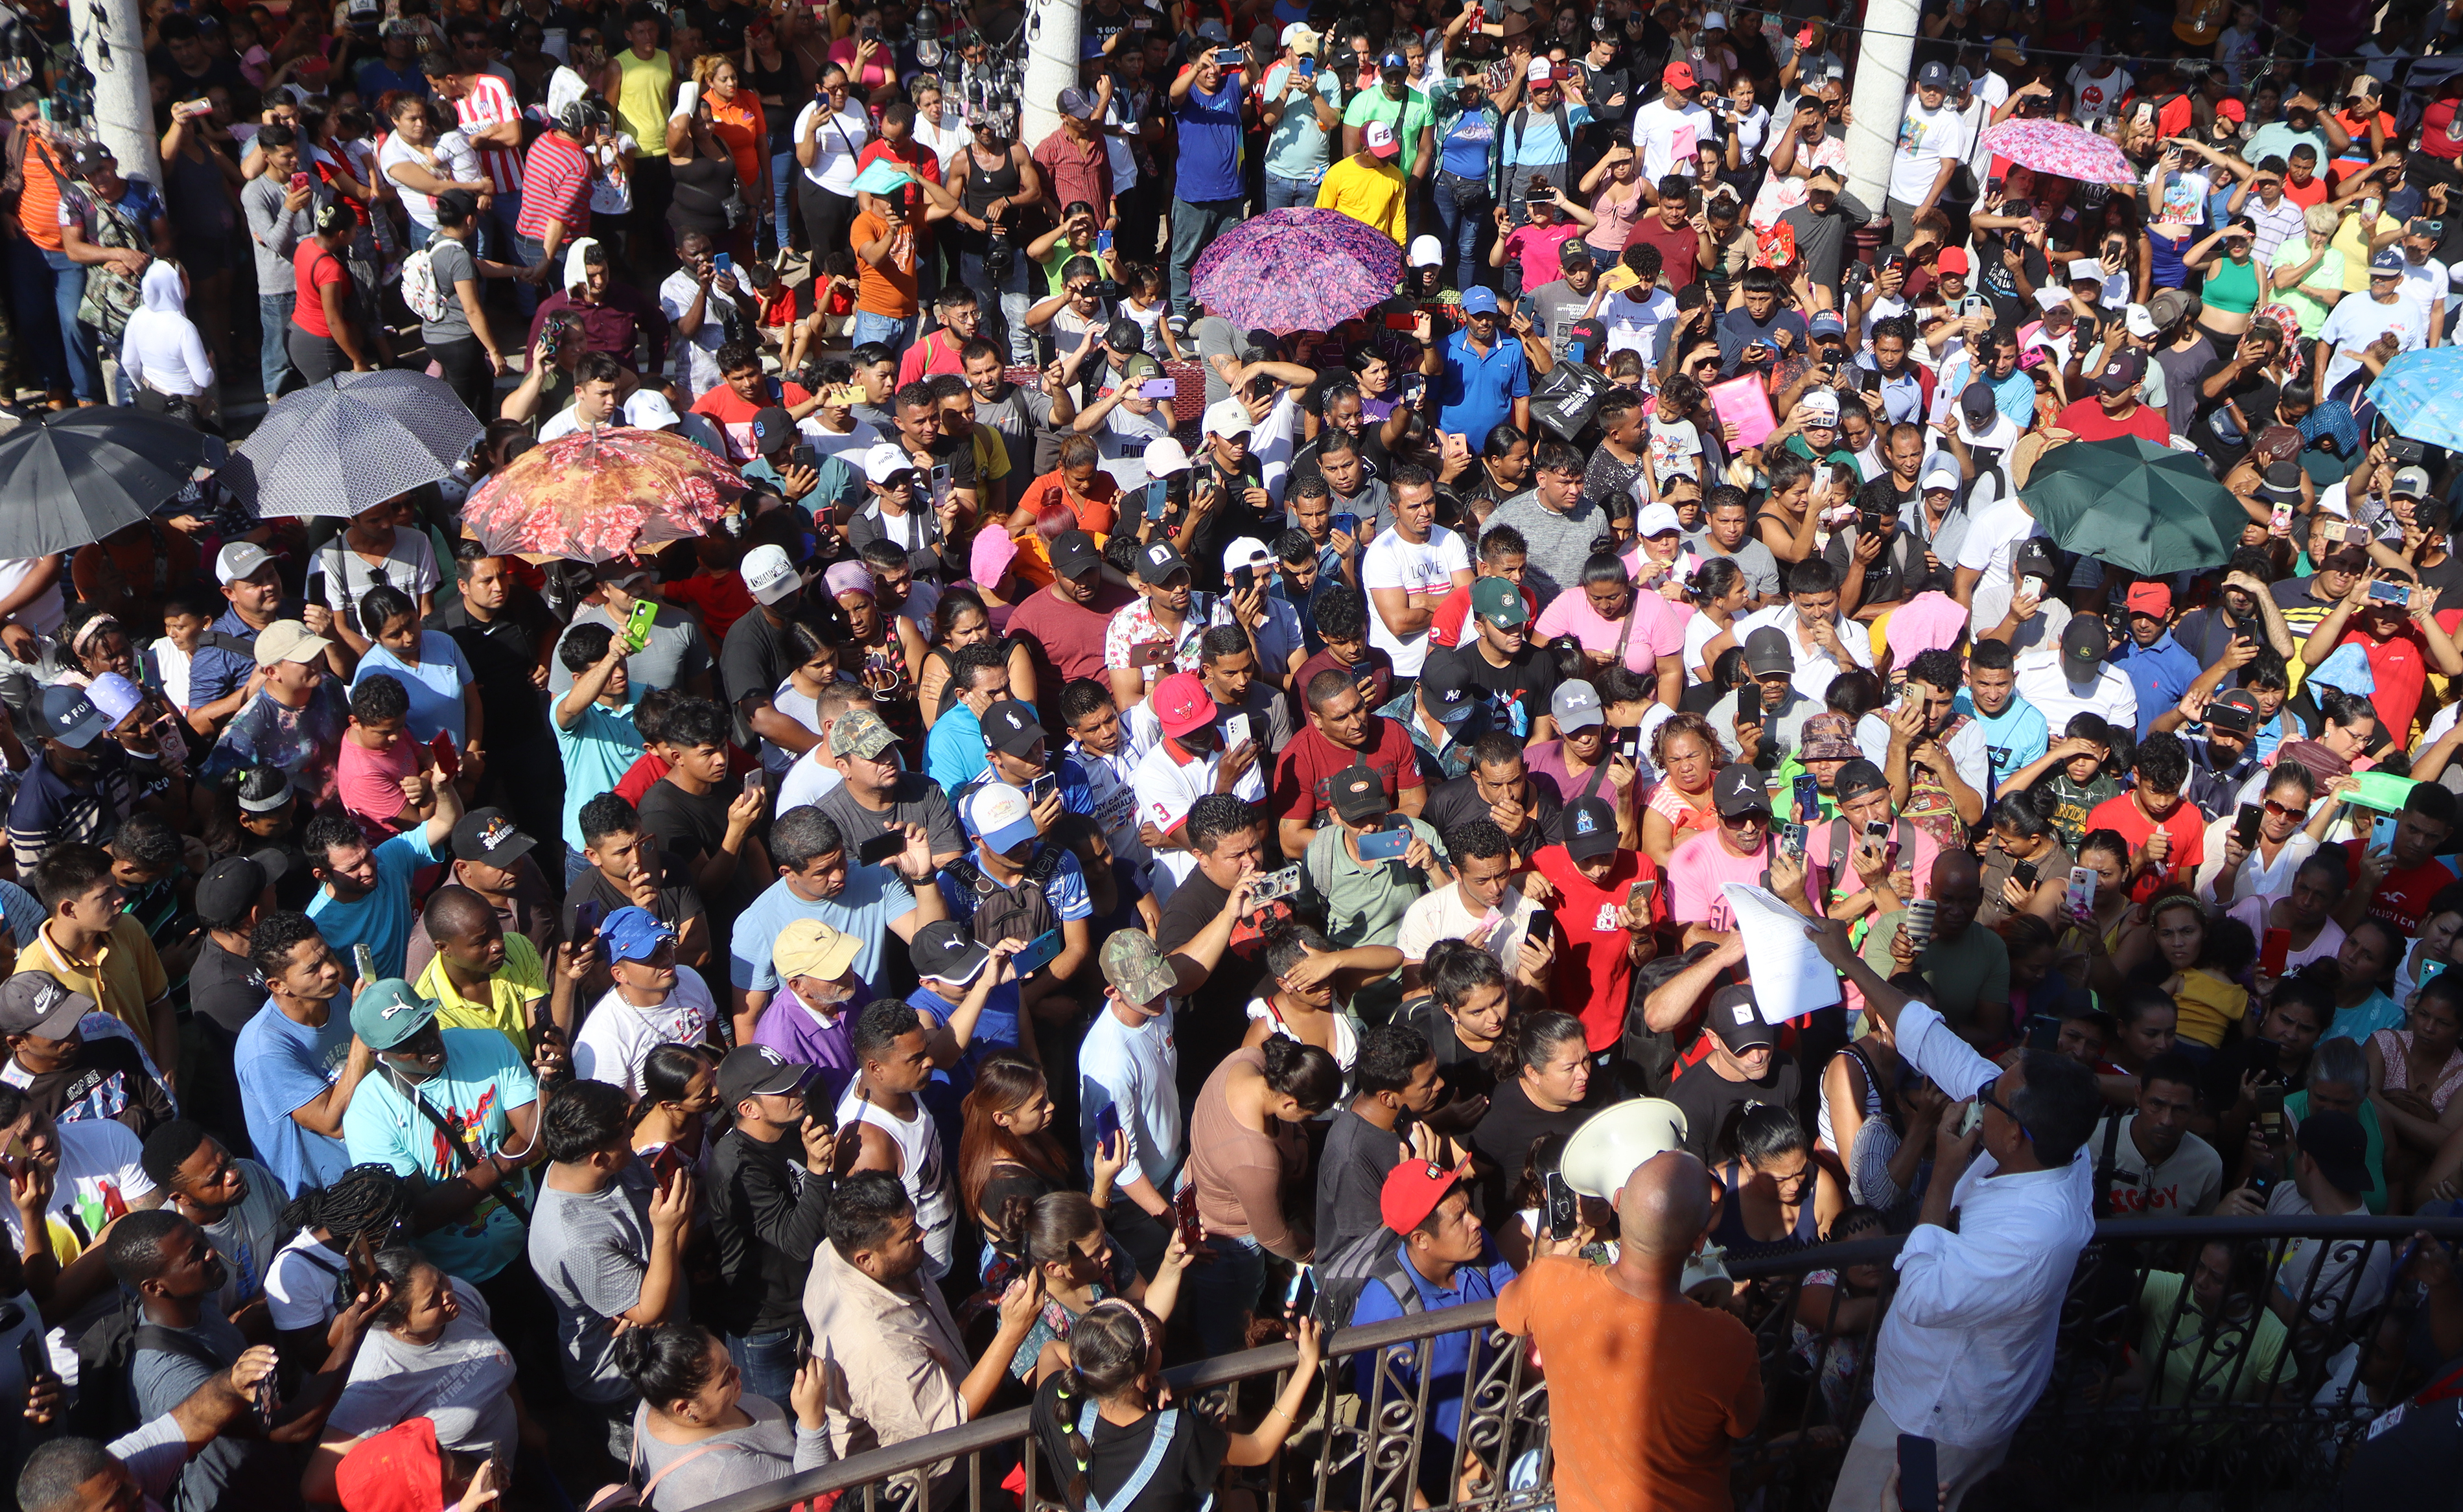 Cientos de inmigrantes reciben instrucciones de autoridades migratorias mexicanas, para recibir amparos en la ciudad de Tapachula, en Chiapas.